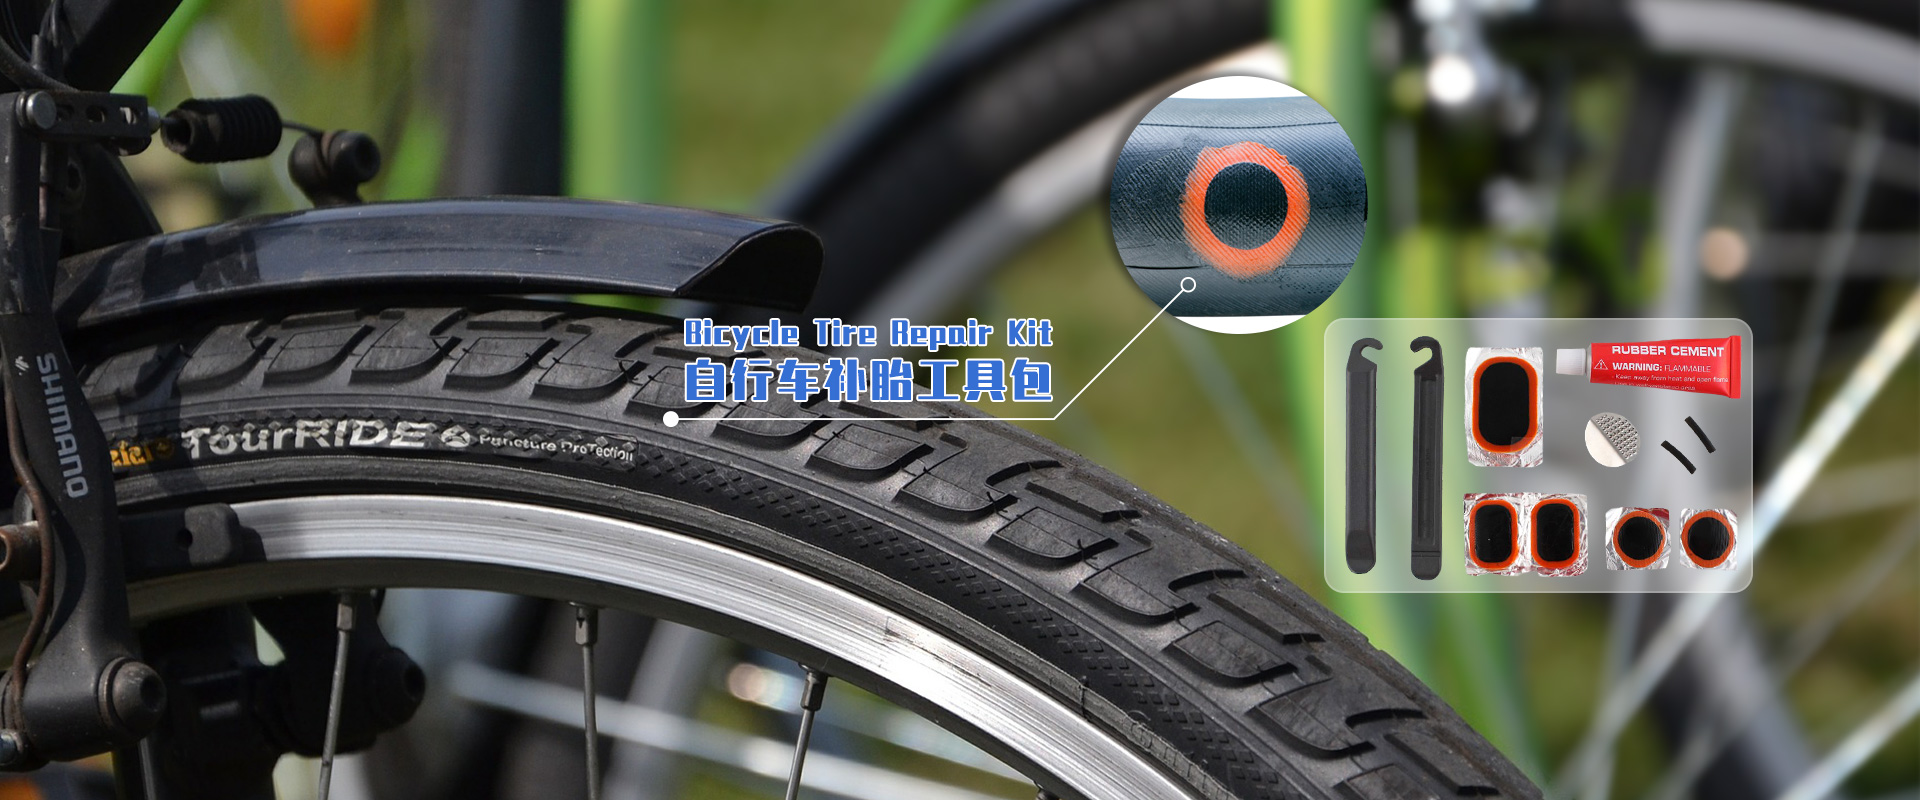 banner-bicycle-tire-repair-kit